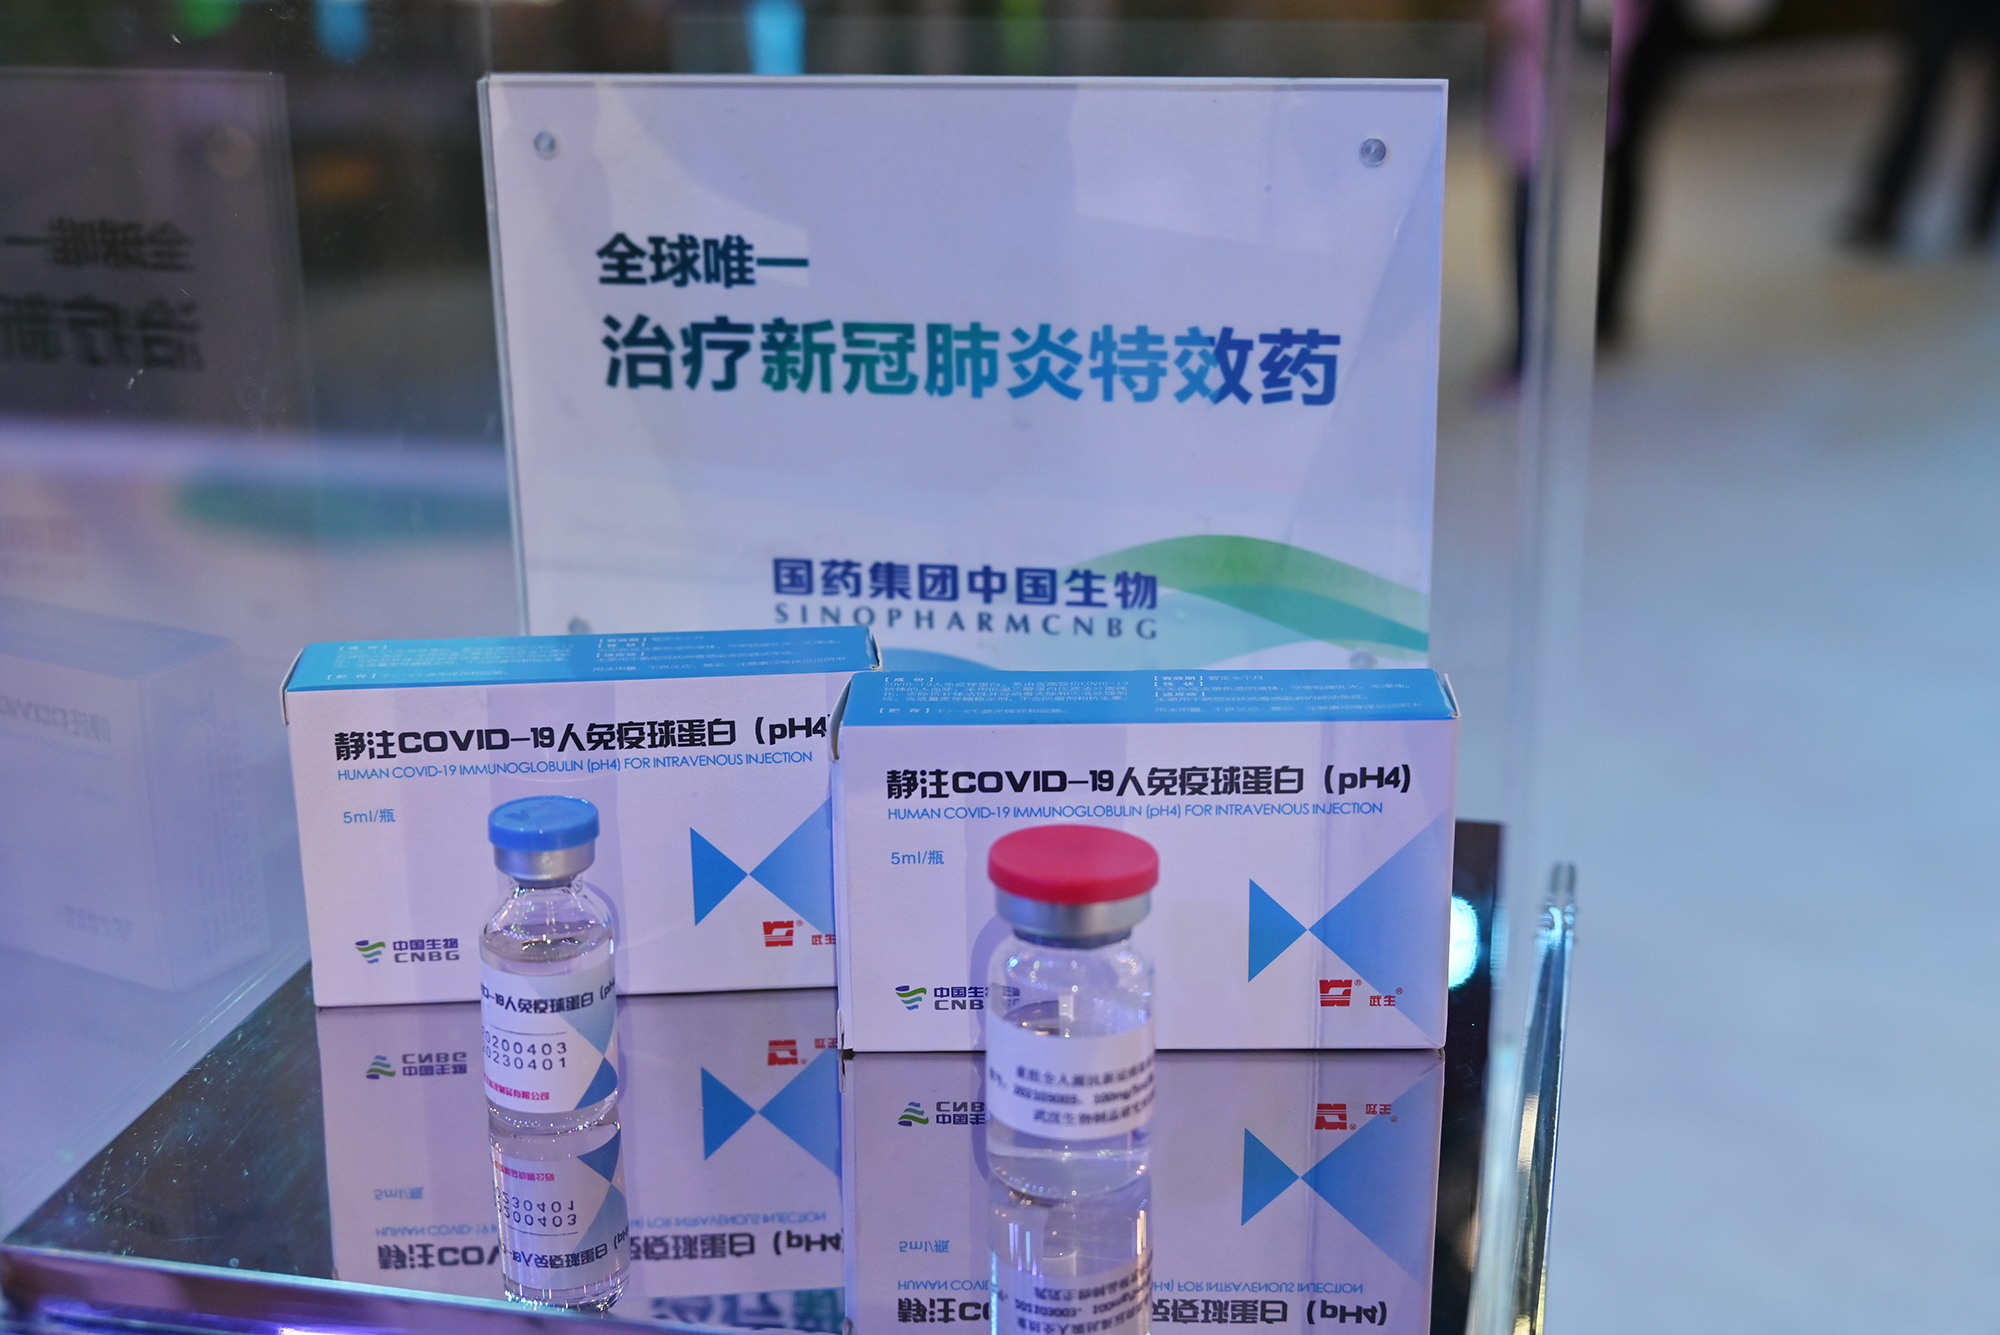 二代疫苗,新冠特效药亮相服贸会,中国生物负责人:新产品有效对抗变异